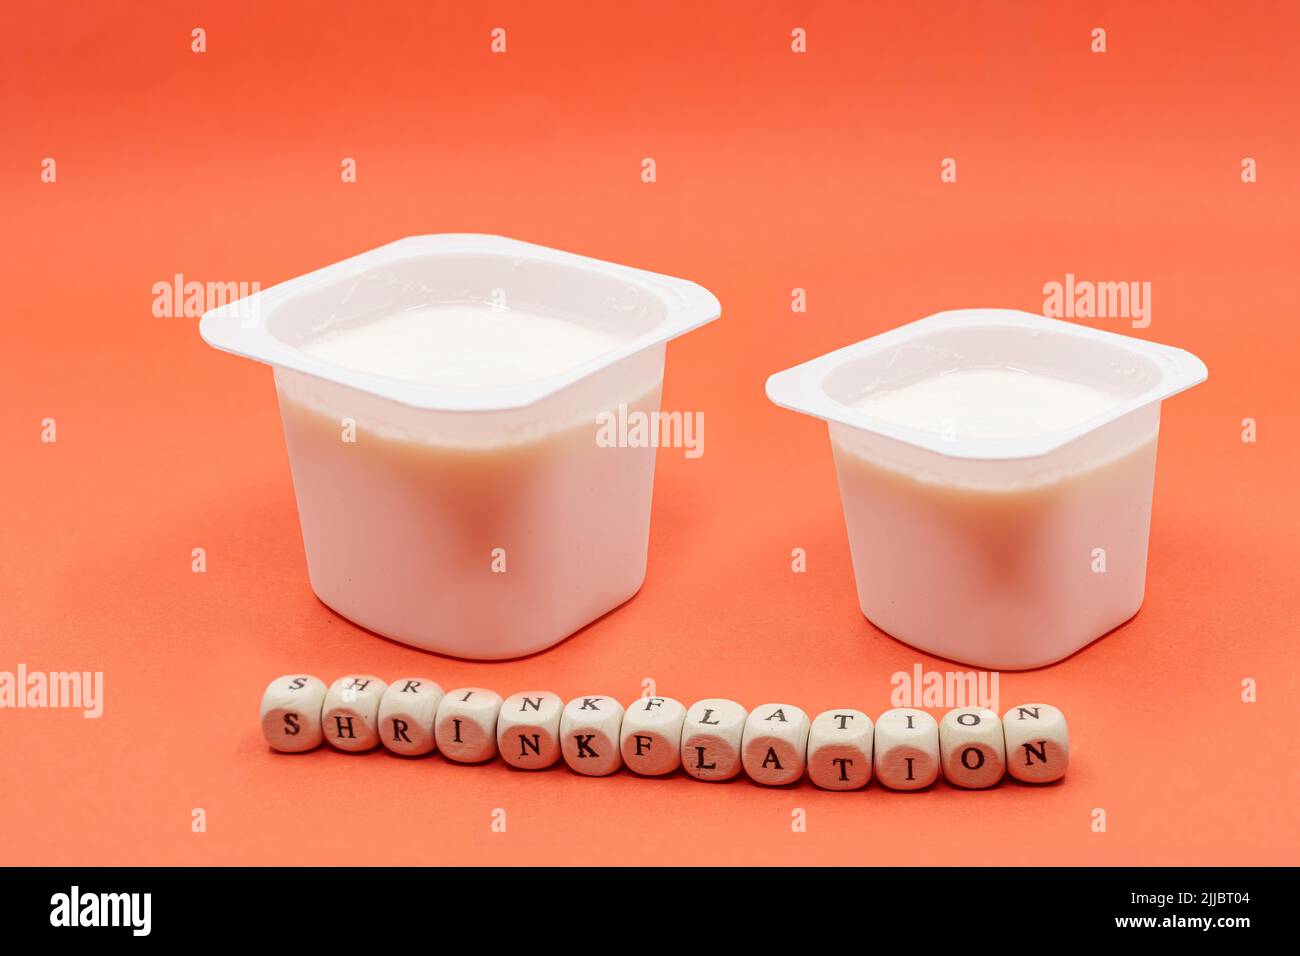 Reduzierter Joghurt auf orangefarbenem Hintergrund. Inflation, Skimpflation oder Schrumpfung Konzept der weniger für den gleichen Preis. Stockfoto